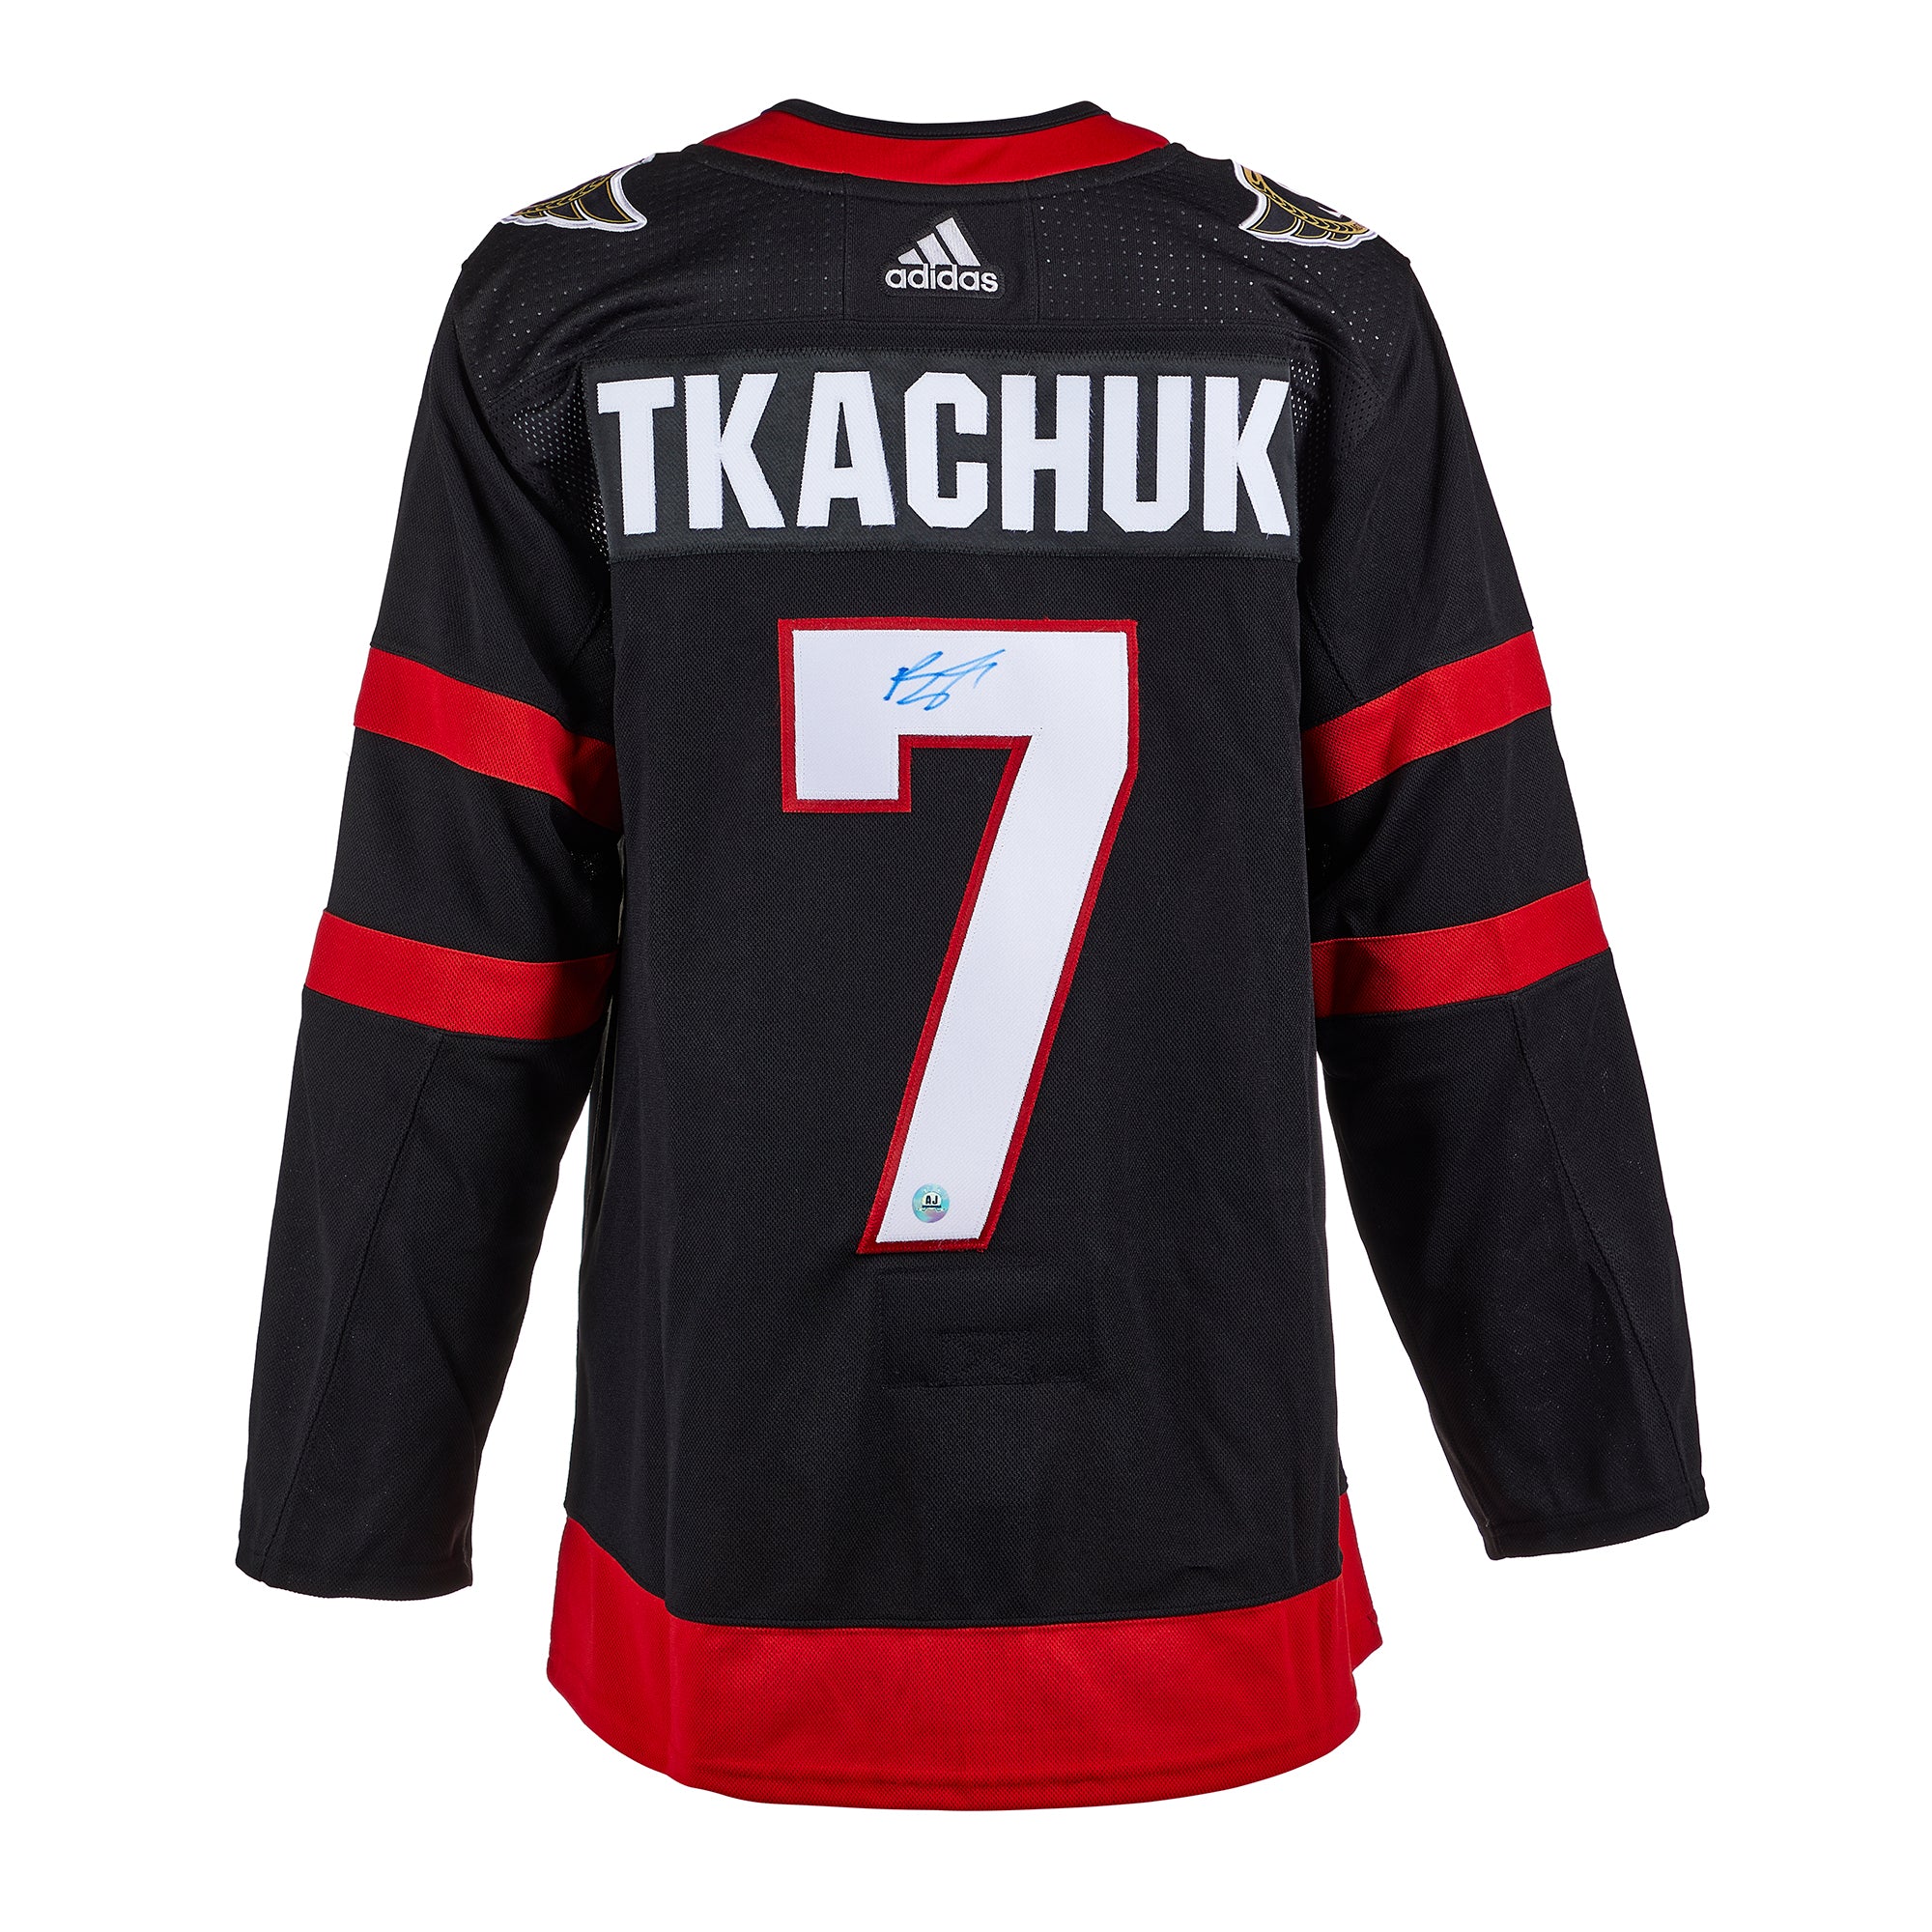 Brady Tkachuk Ottawa Senators Fanatics Authentic Autographed 16